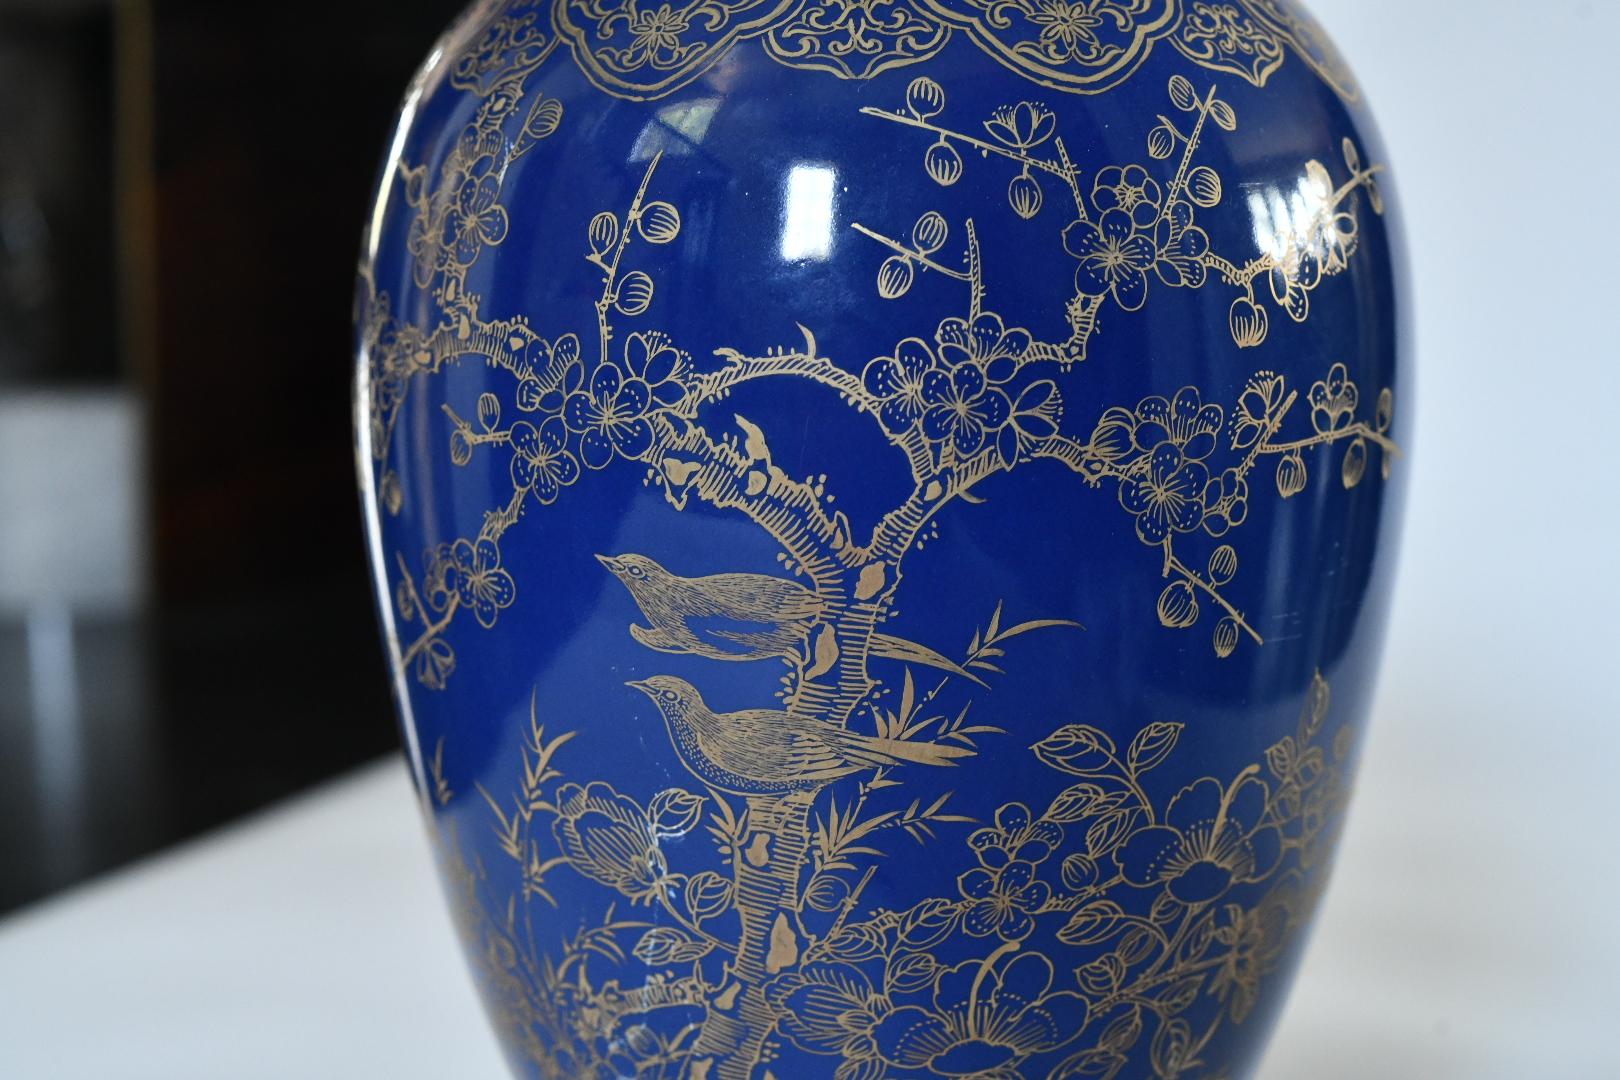 Zwei Lampen aus blauem Porzellan mit Ormolu-Montierung und fein gemaltem Blüten- und Vogeldekor.
(Lampenschirm nicht enthalten).